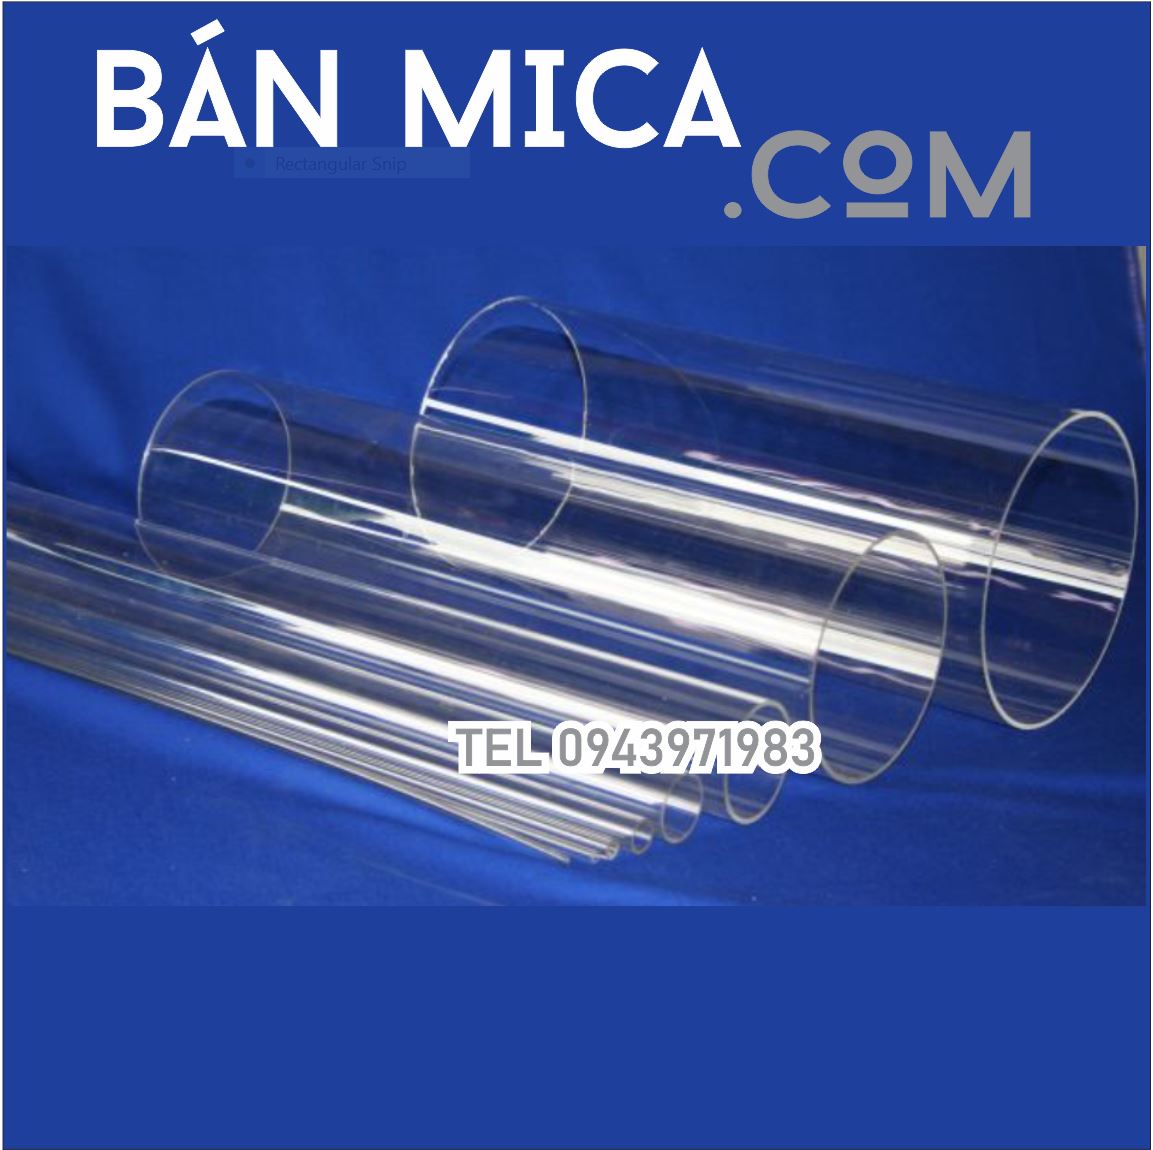 Mica ống Đường Kính 20MM | BÁN MICA .COM - Liên hệ 0943971983